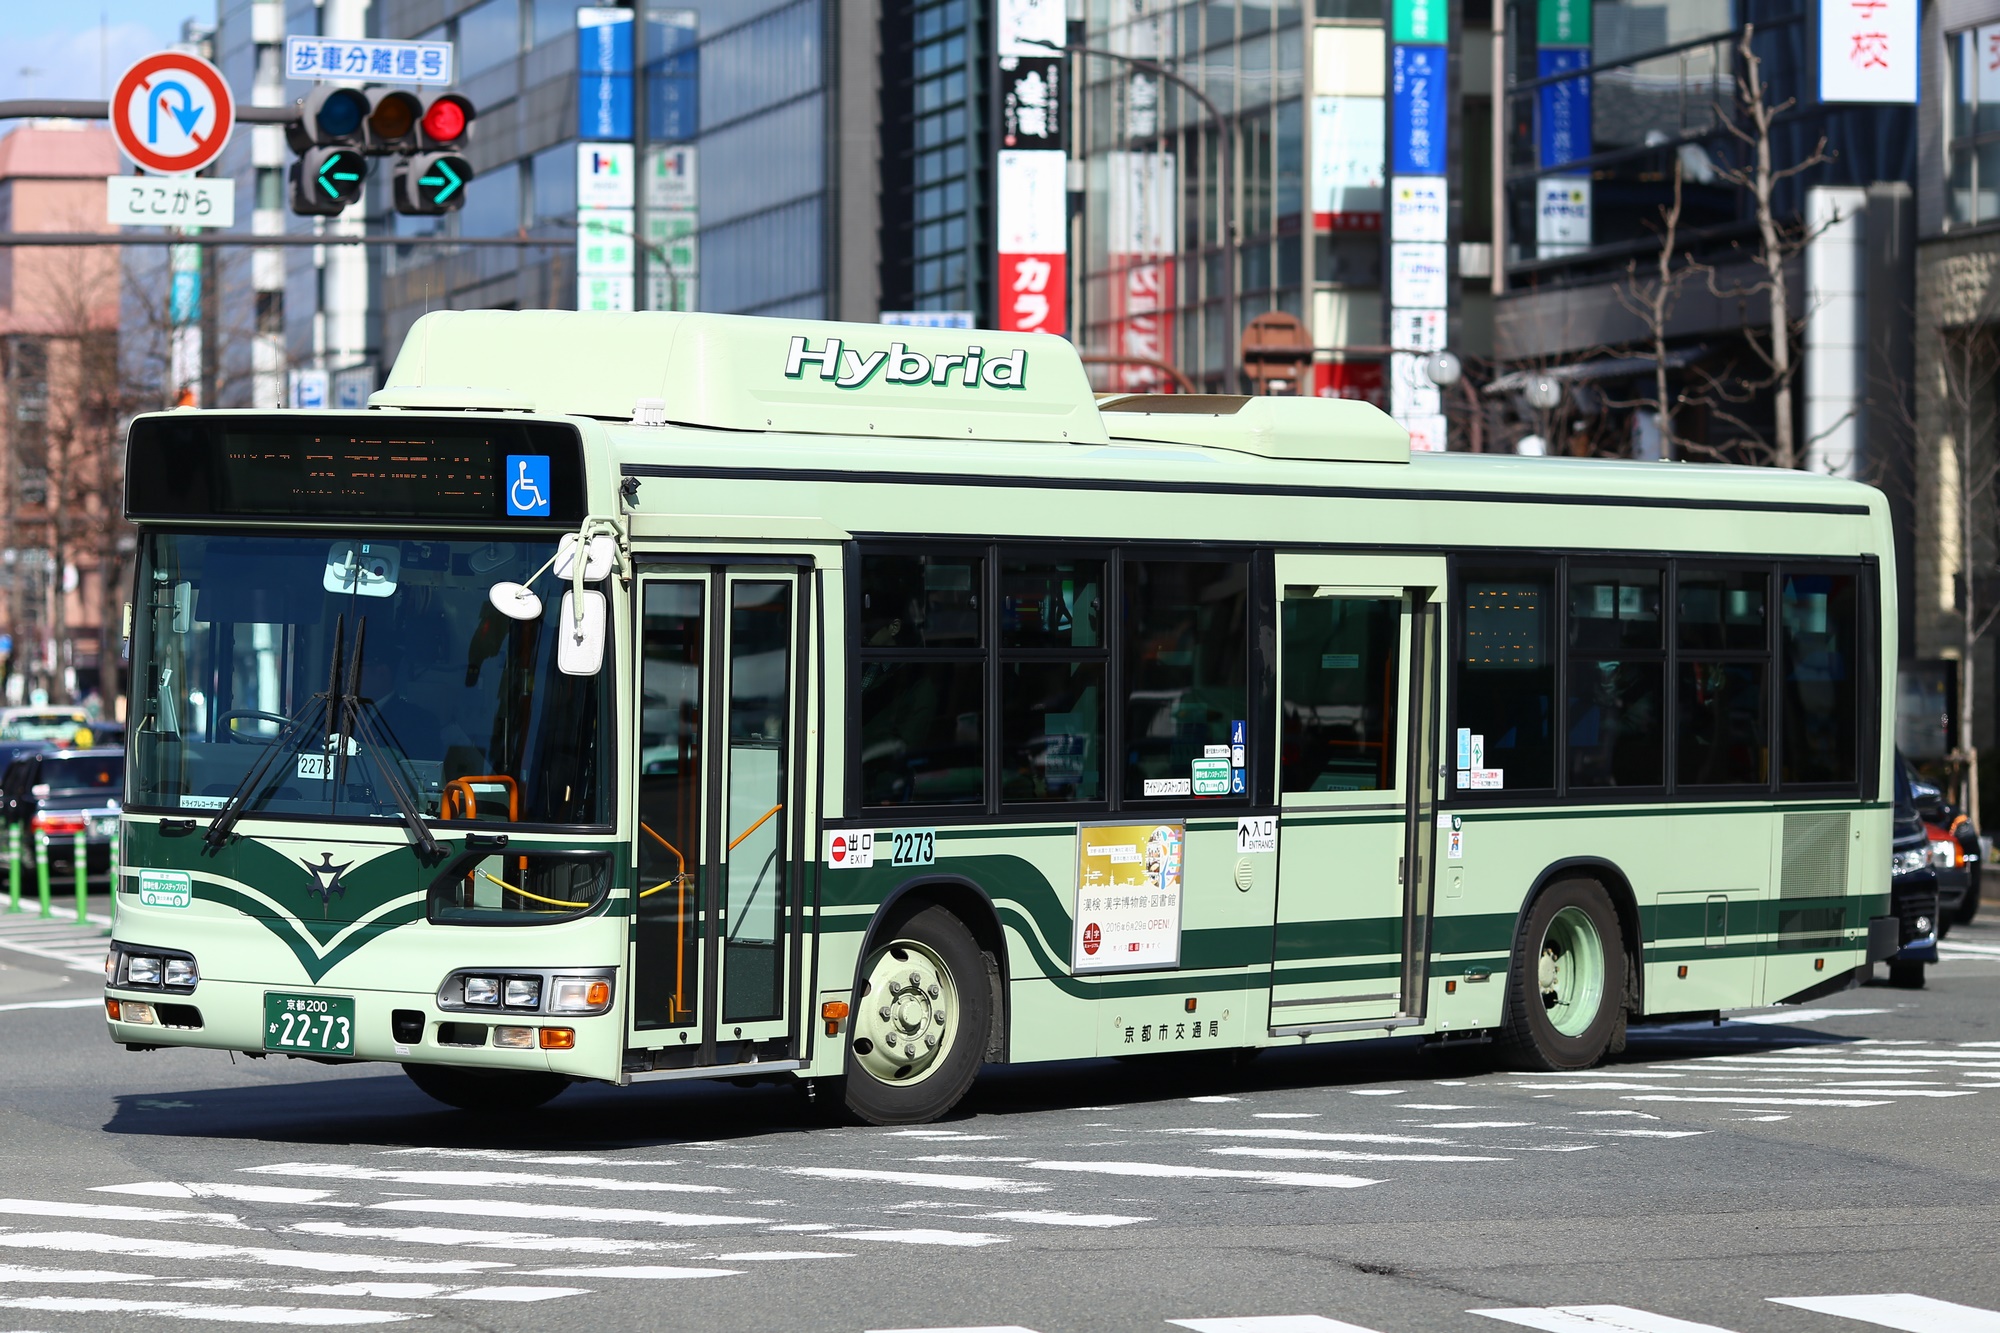 京都市バス 日野 BJG-HU8JMFP 2273号車 26系統 京都駅前にて